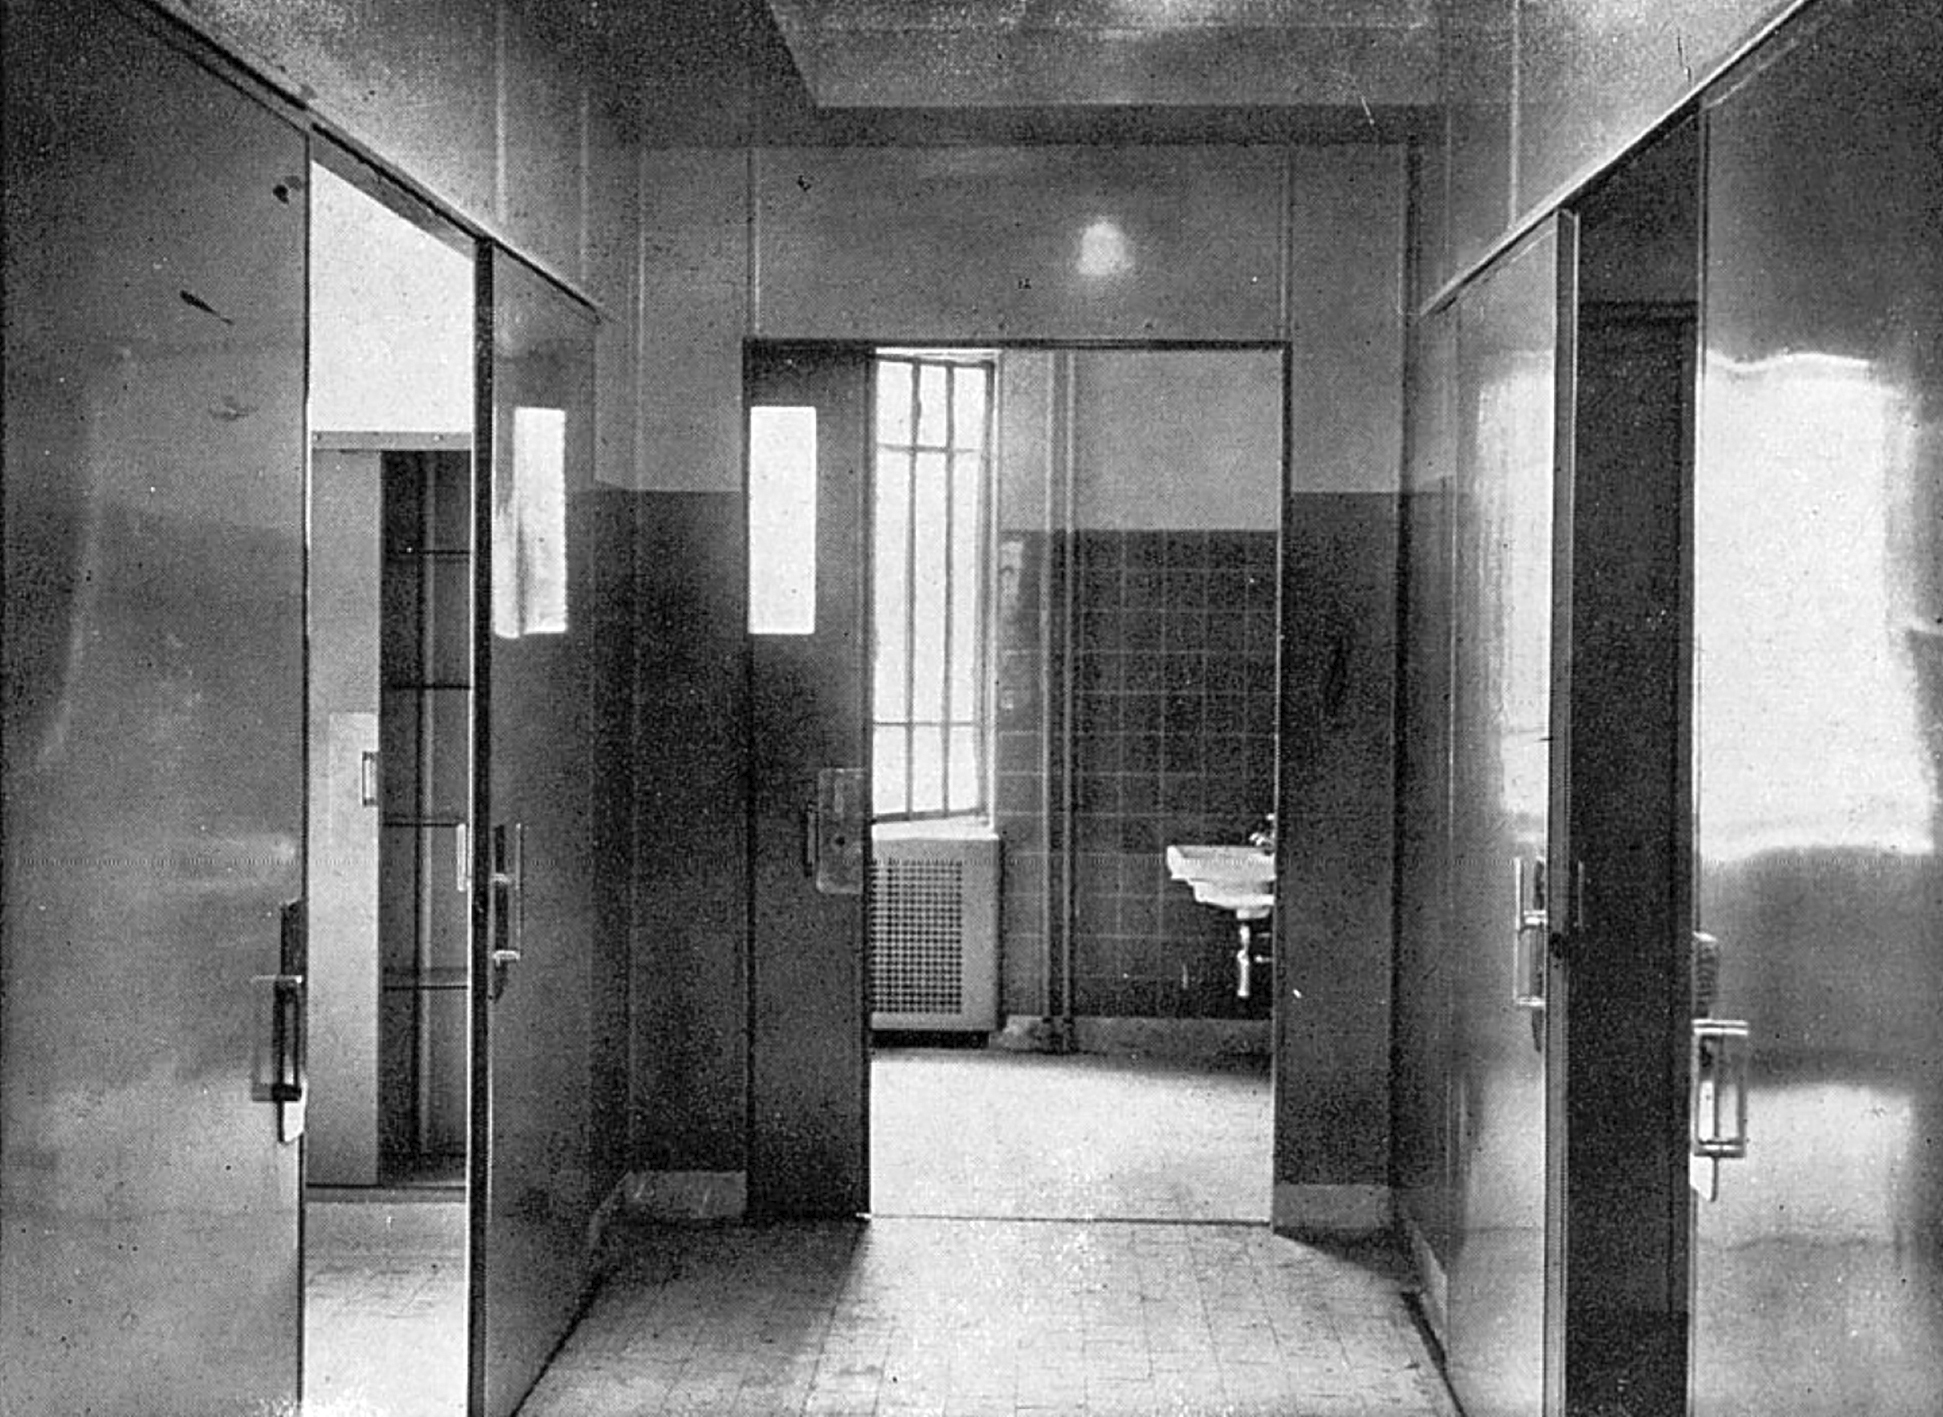 Équipements pour l’hôpital de Grange-Blanche, Lyon, 1930 (T. Garnier, Durand et Faure arch.) paru dans <i>L’Architecture d’aujourd’hui,</i> n° 9, décembre 1934.